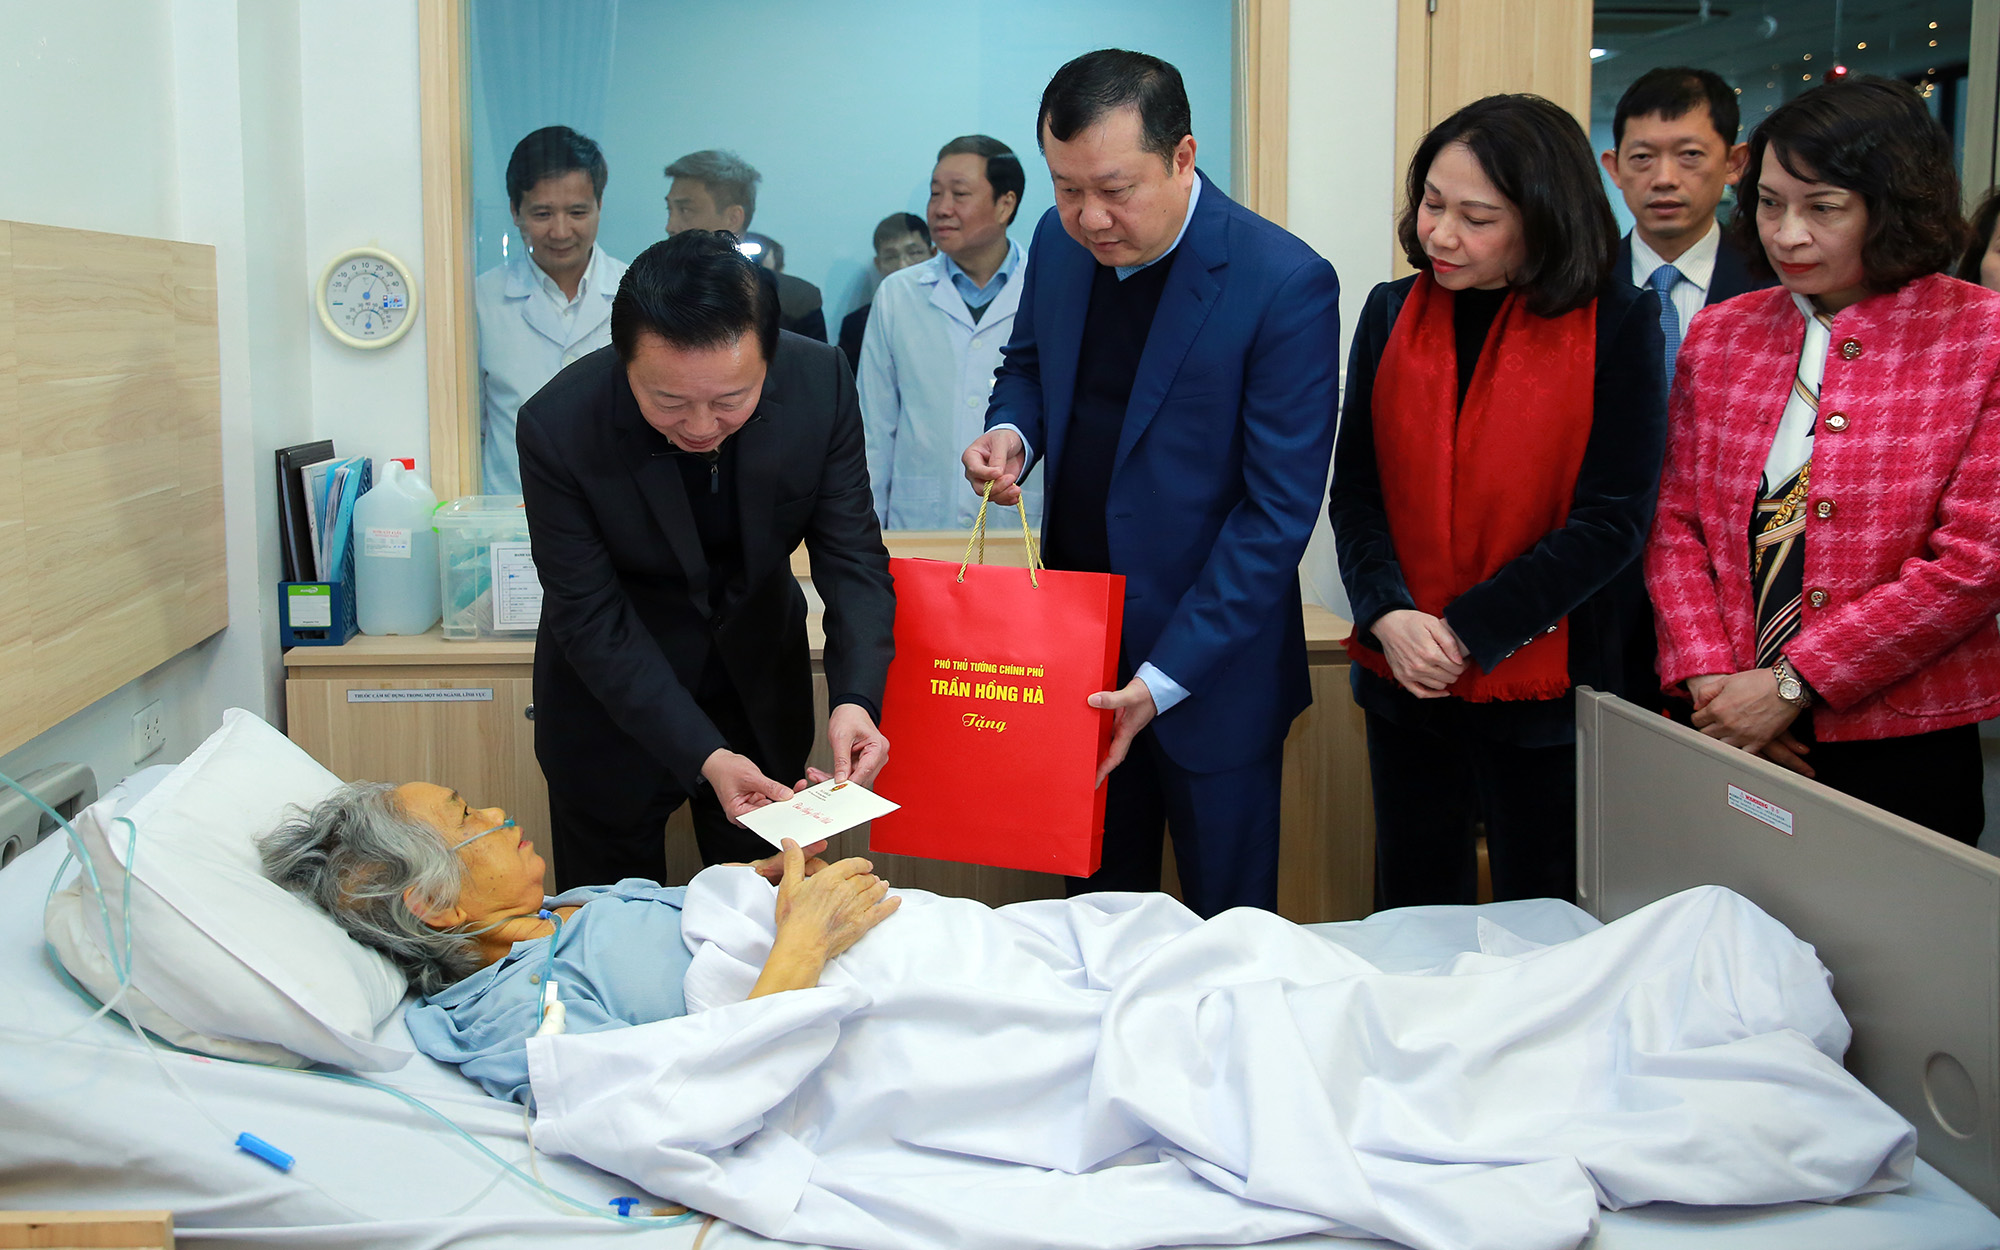 Phó Thủ tướng Trần Hồng Hà thăm hỏi các bệnh nhân phải đón Tết trong Bệnh viện Ung bướu Hà Nội - Ảnh: VGP/Minh Khôi